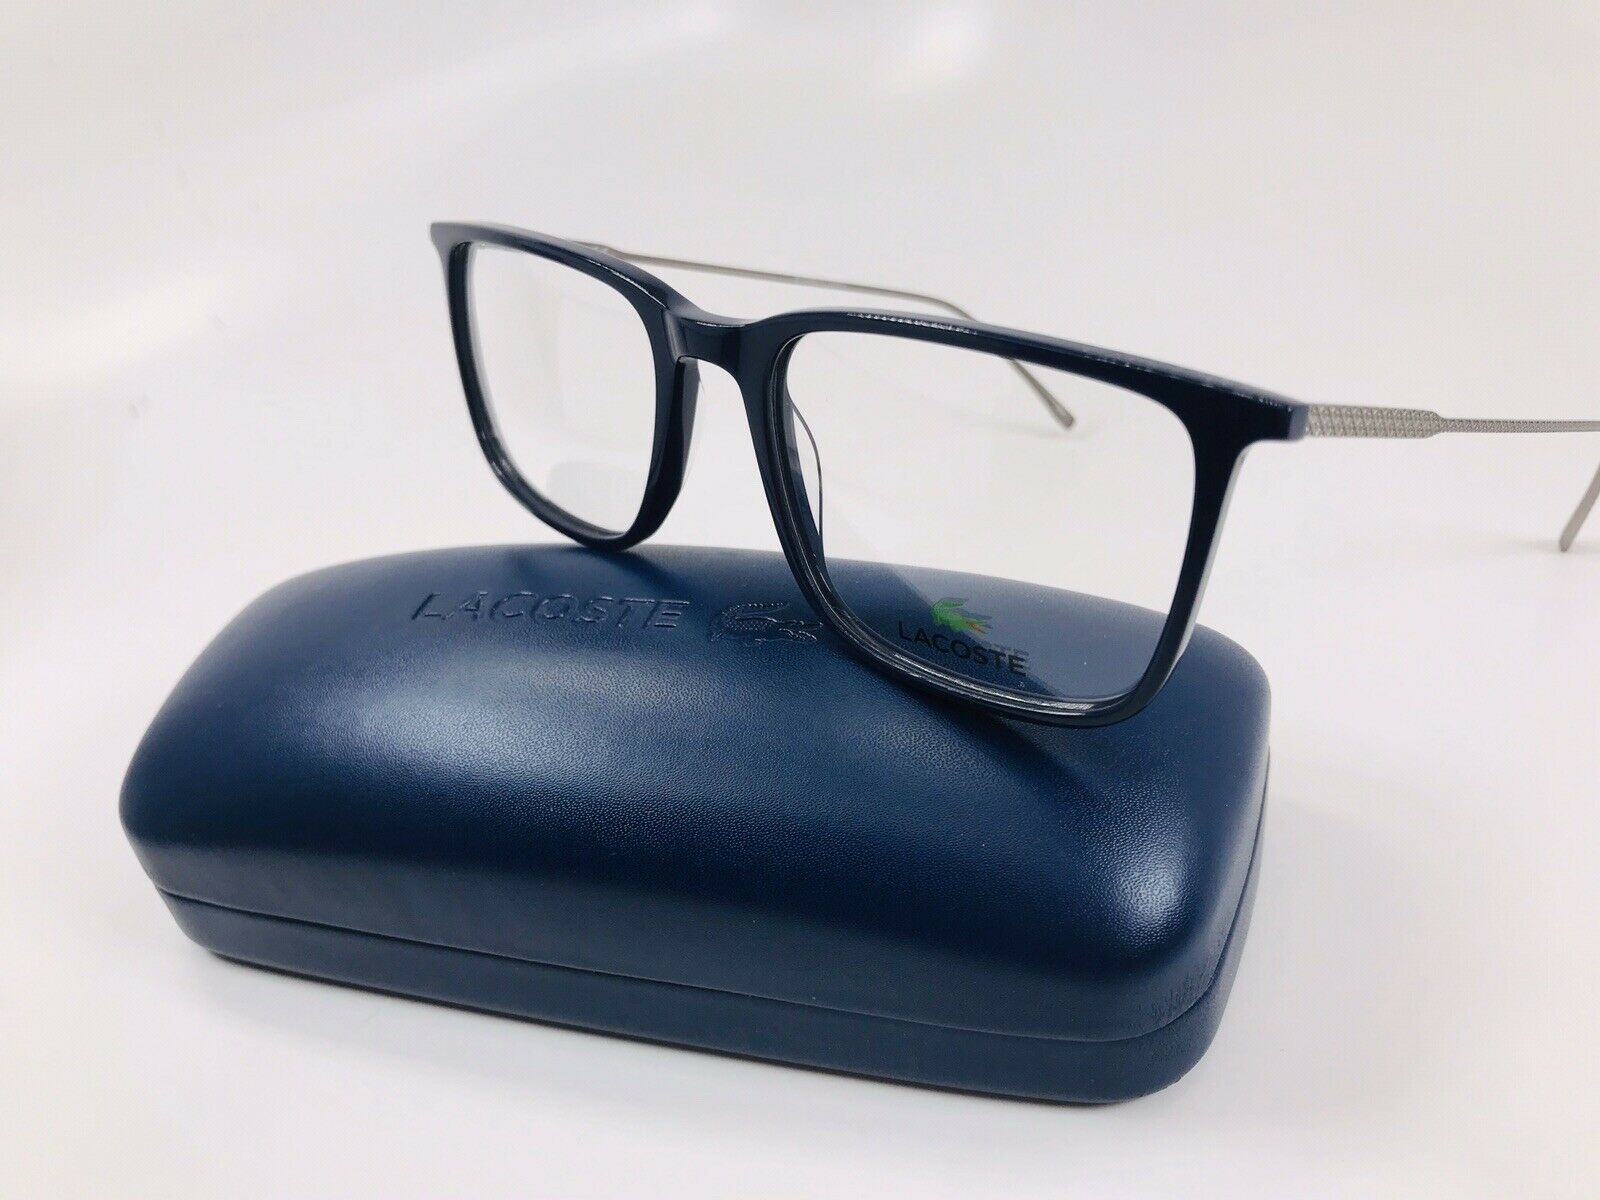 SUCCESS XPL NOAH Clear Crystal Eyeglasses 55-17-145 - True View Optics